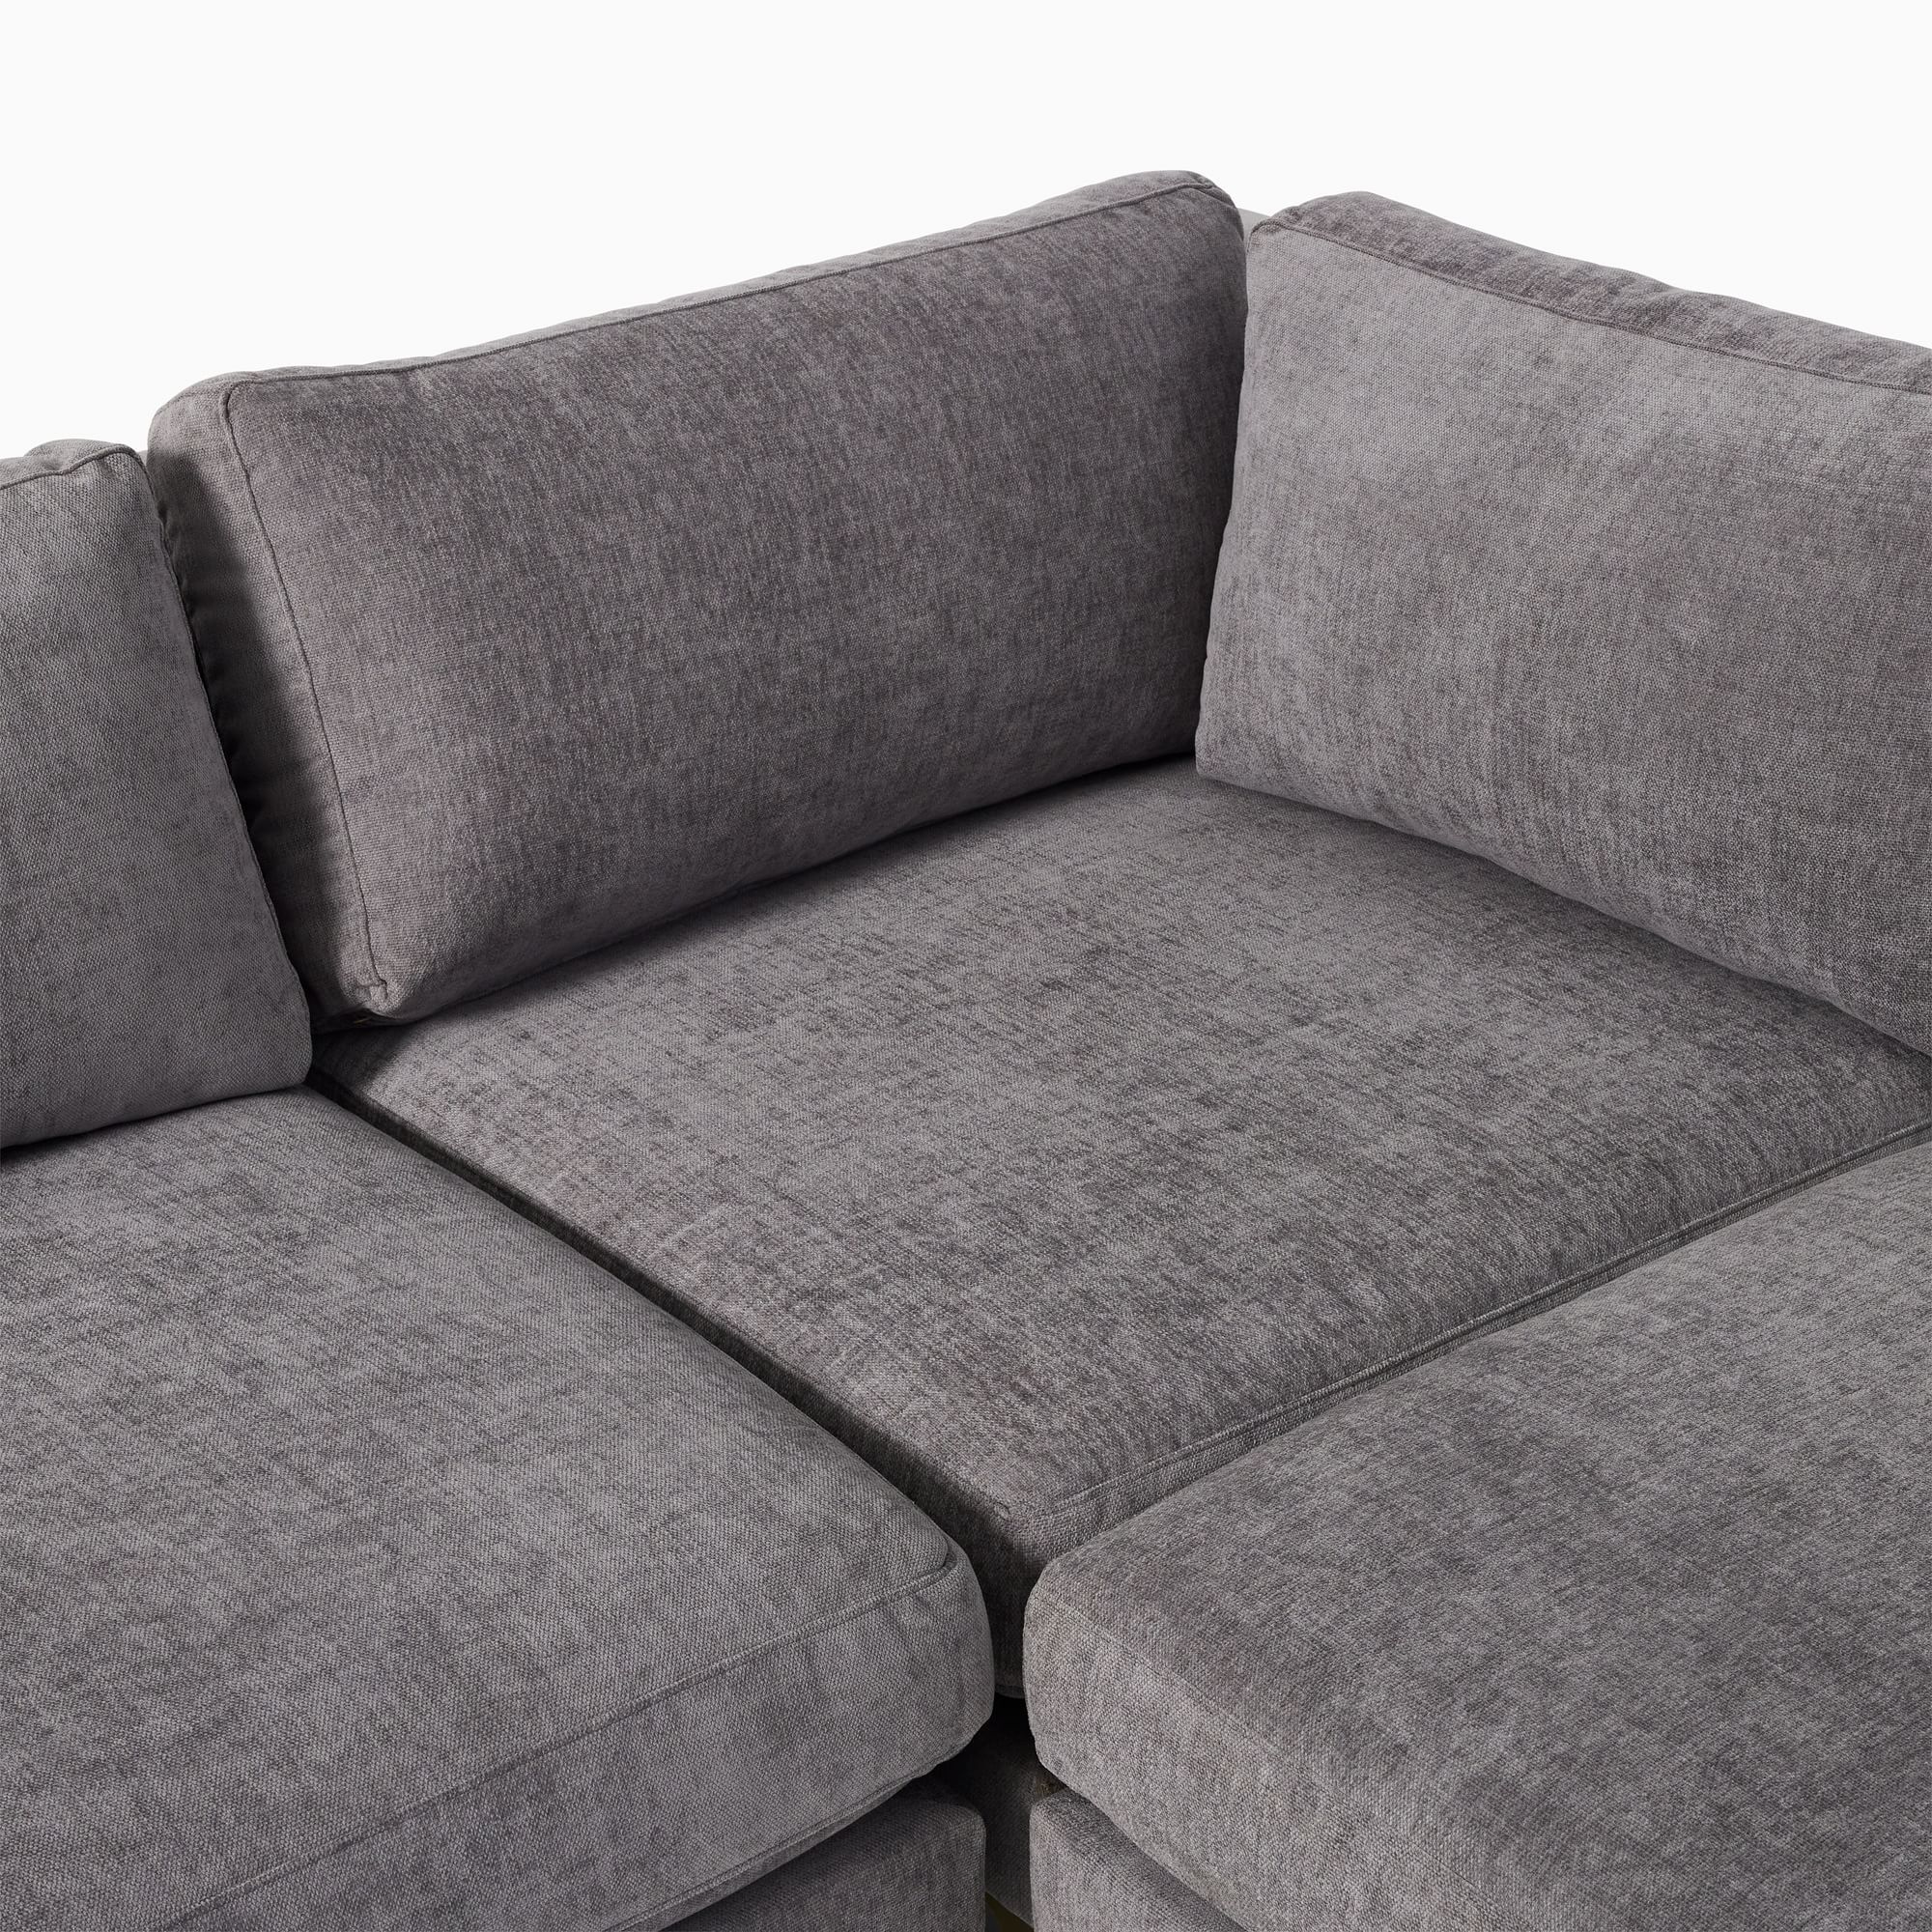  Bộ ghế sofa góc phòng khách GT133 Andes 2m2 x 2m2 xám đậm 